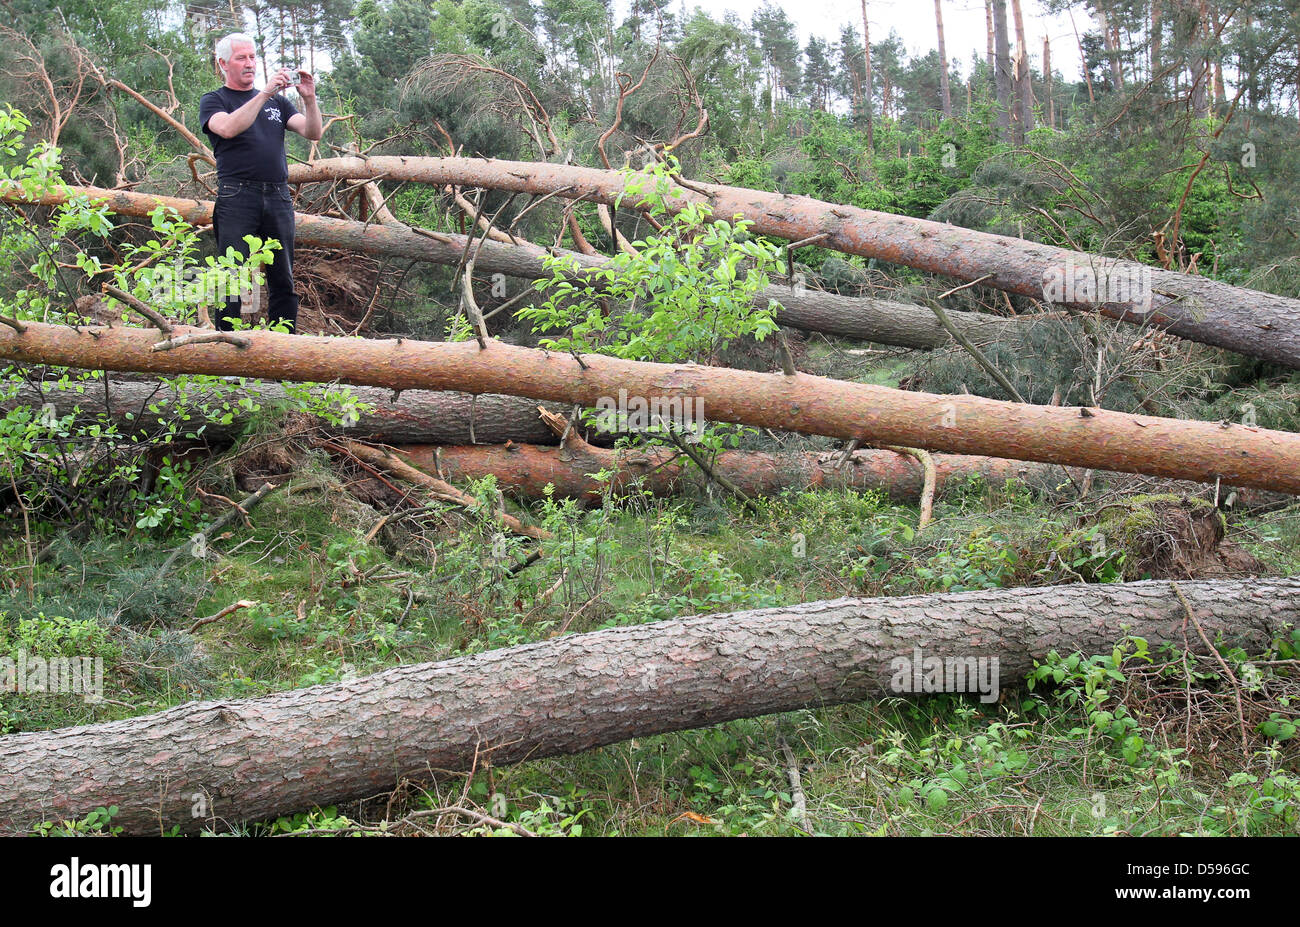 Ein Mann Fotos umgestürzte Bäume, die gebogen oder entwurzelte wegen eines Sturms in einem Wald auf der B103 in der Nähe von Ganzlin, Deutschland, 13. Juni 2010. Allein in diesem schweren Treffer Sonderbereich, südlich von Plau am See, die geringe '' Doris'' bis zu 1.000 Bäume fallen verursacht. Jedoch nach Angaben der Polizei immer mehr '' Katastrophe Touristen '' haben ihren Weg gefunden '' fotografieren zu einem Tarif-dich-wir Stockfoto